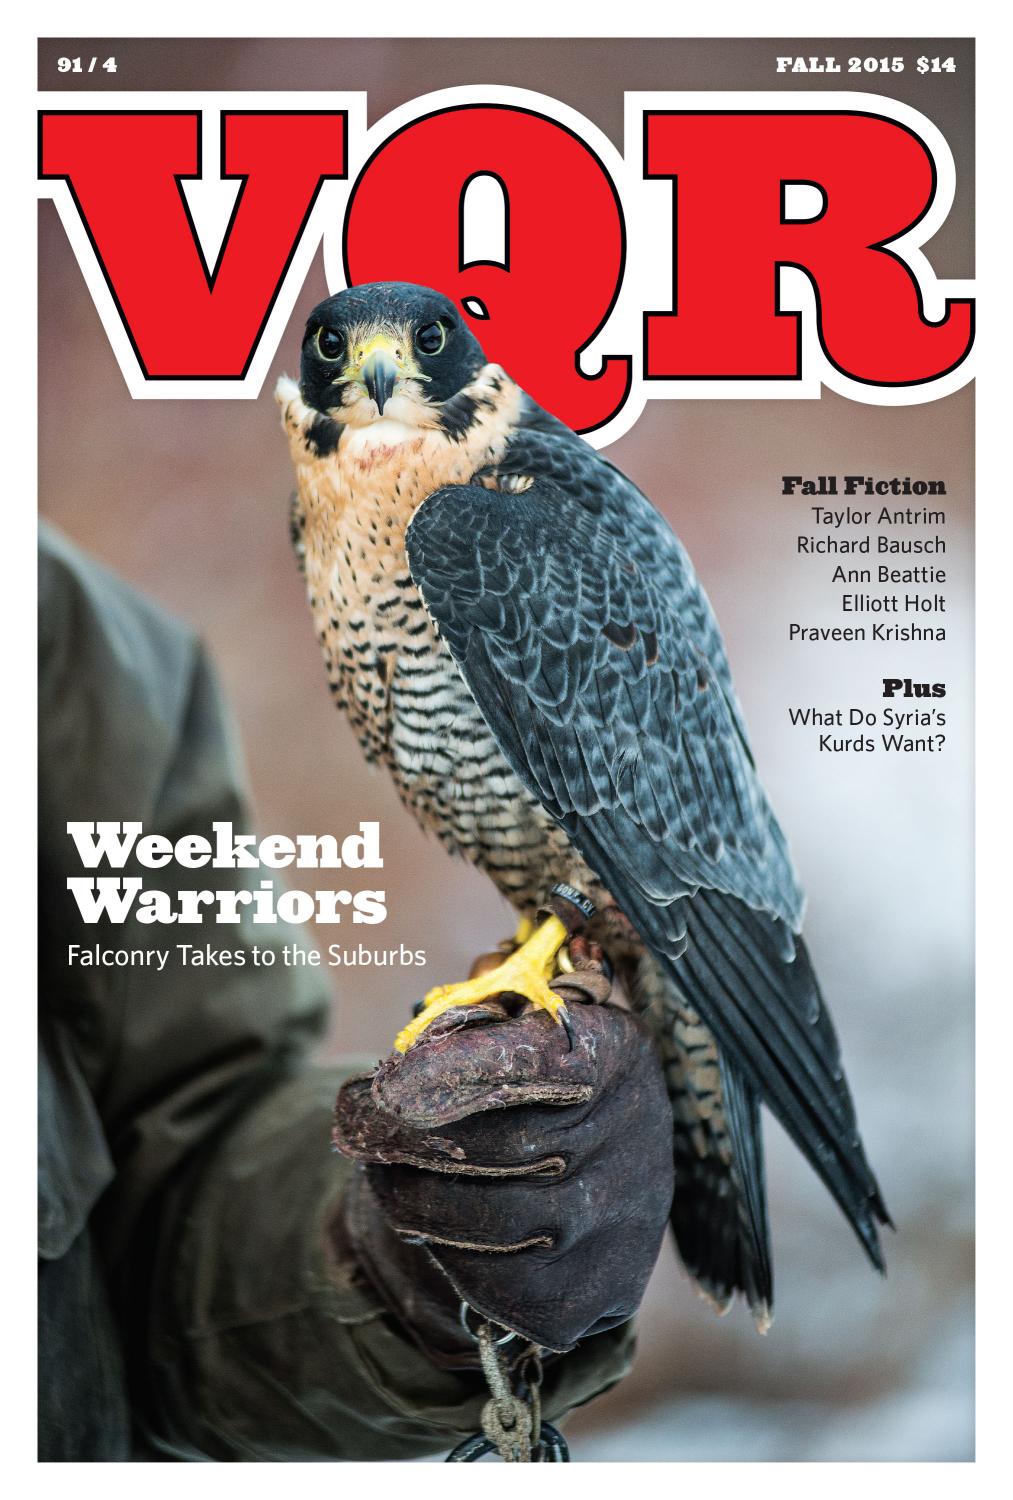 Virginia Quarterly Review, Autumn 2015 cover